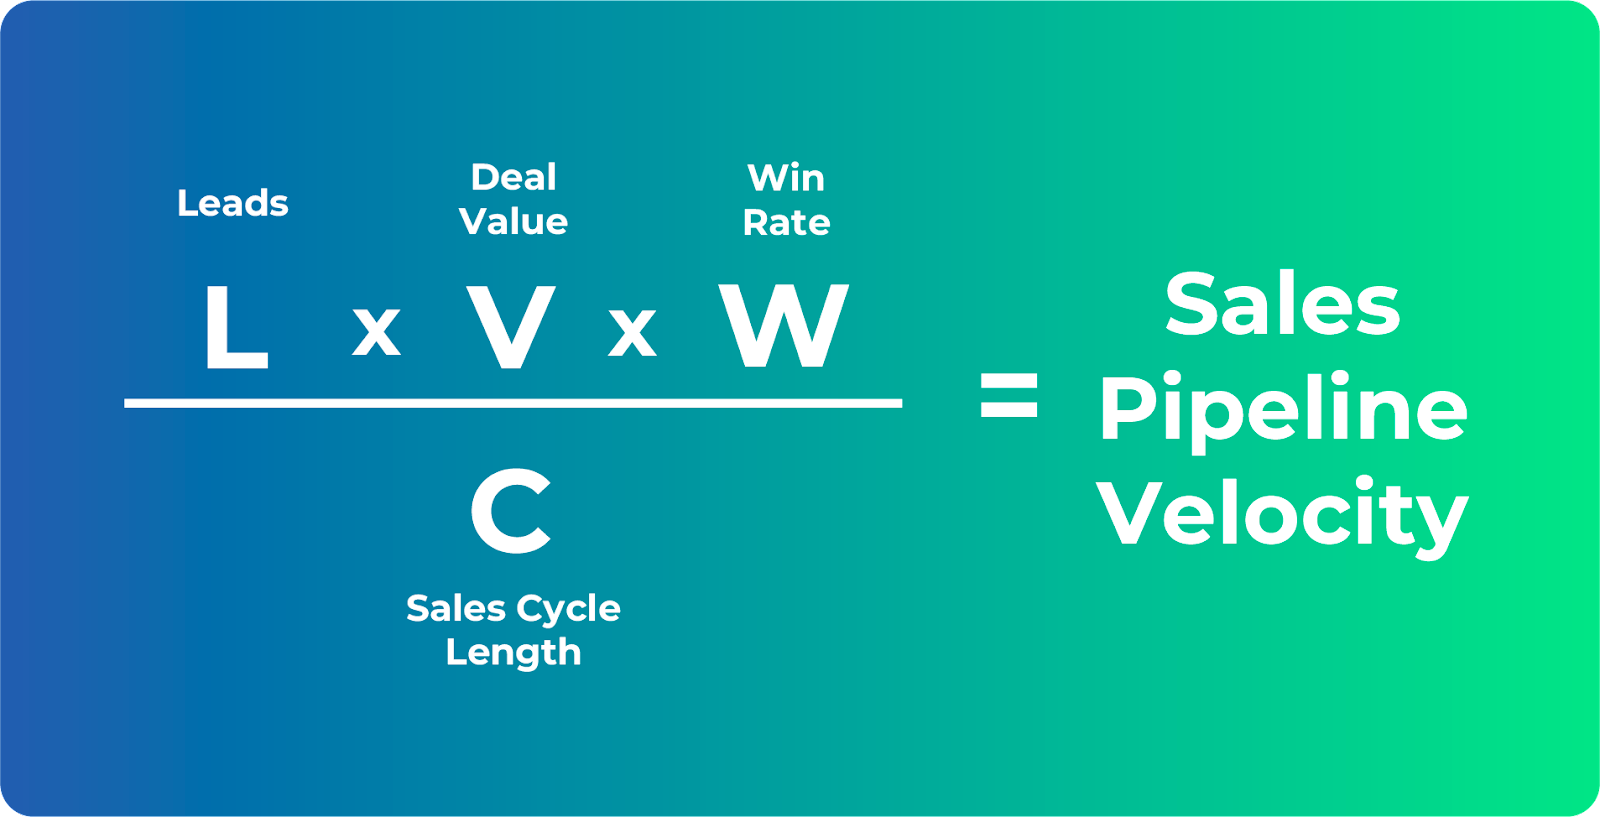 sales pipeline velocity image 